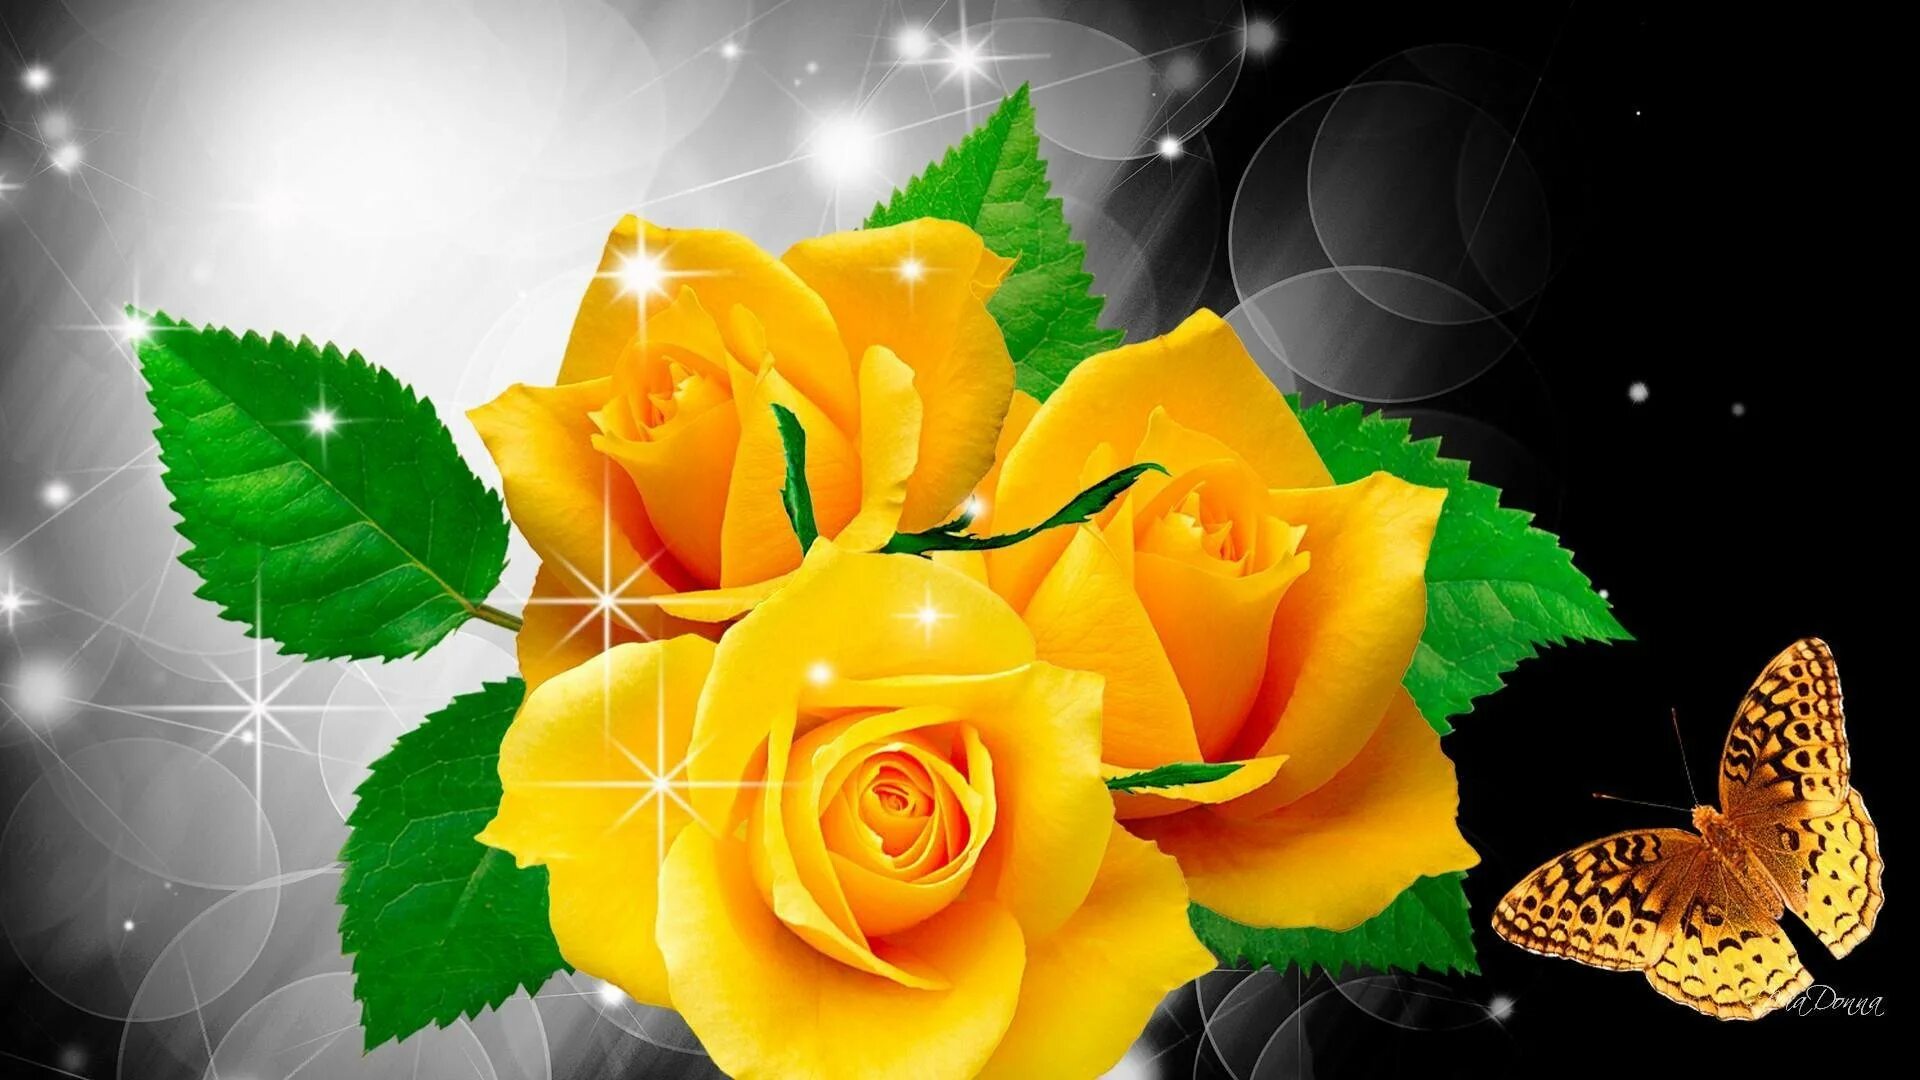 Картинка добрый цветок. Желтые розы. Цветы красивые живые. Переливающиеся цветы. Спокойной ночи с желтыми розами.